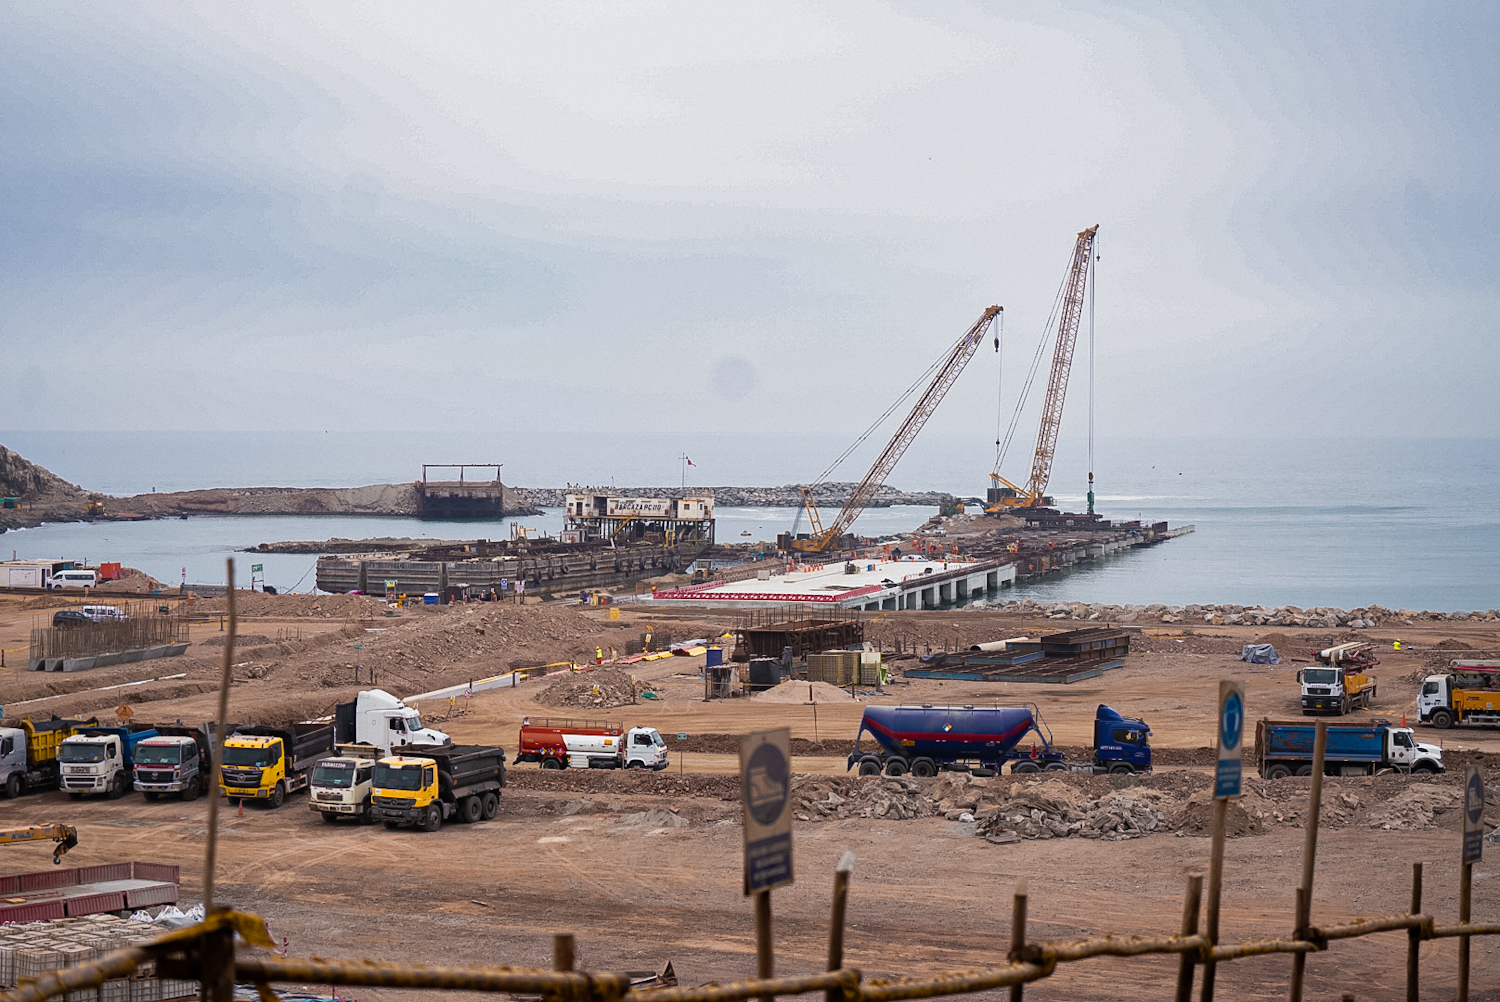 Economia acreana será uma das beneficiadas com construção de novo porto peruano